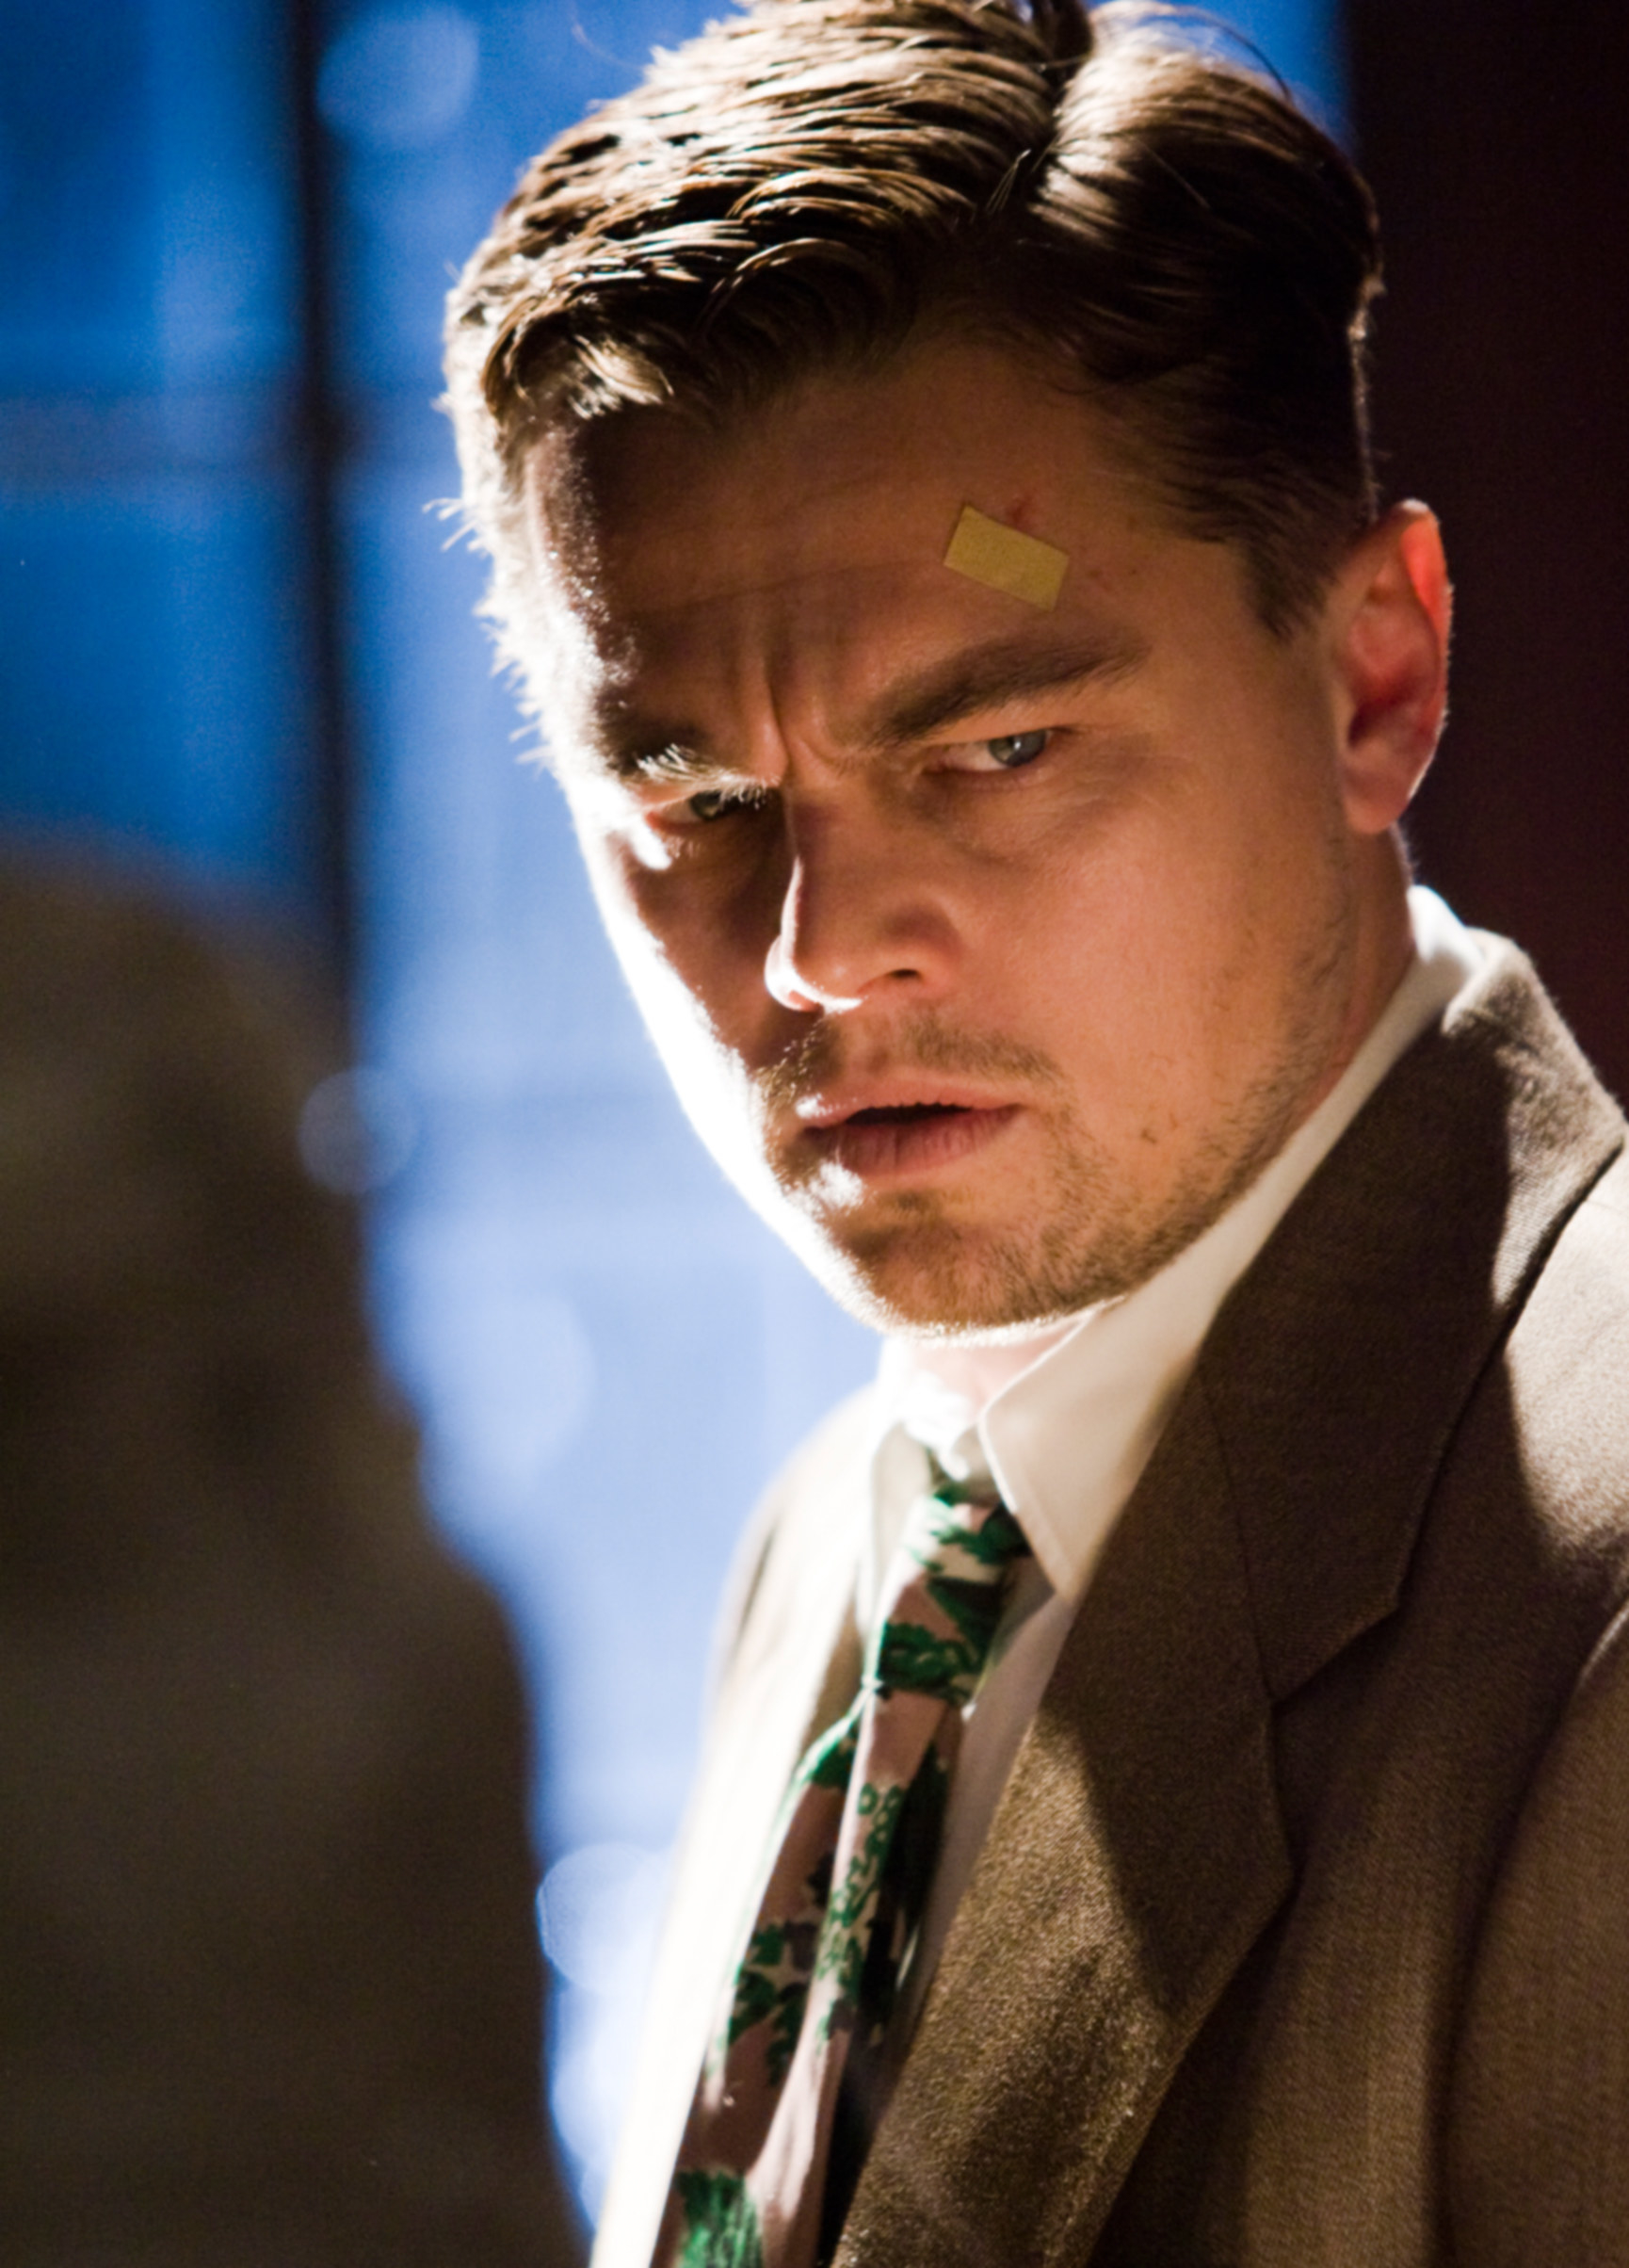 Leo in the film